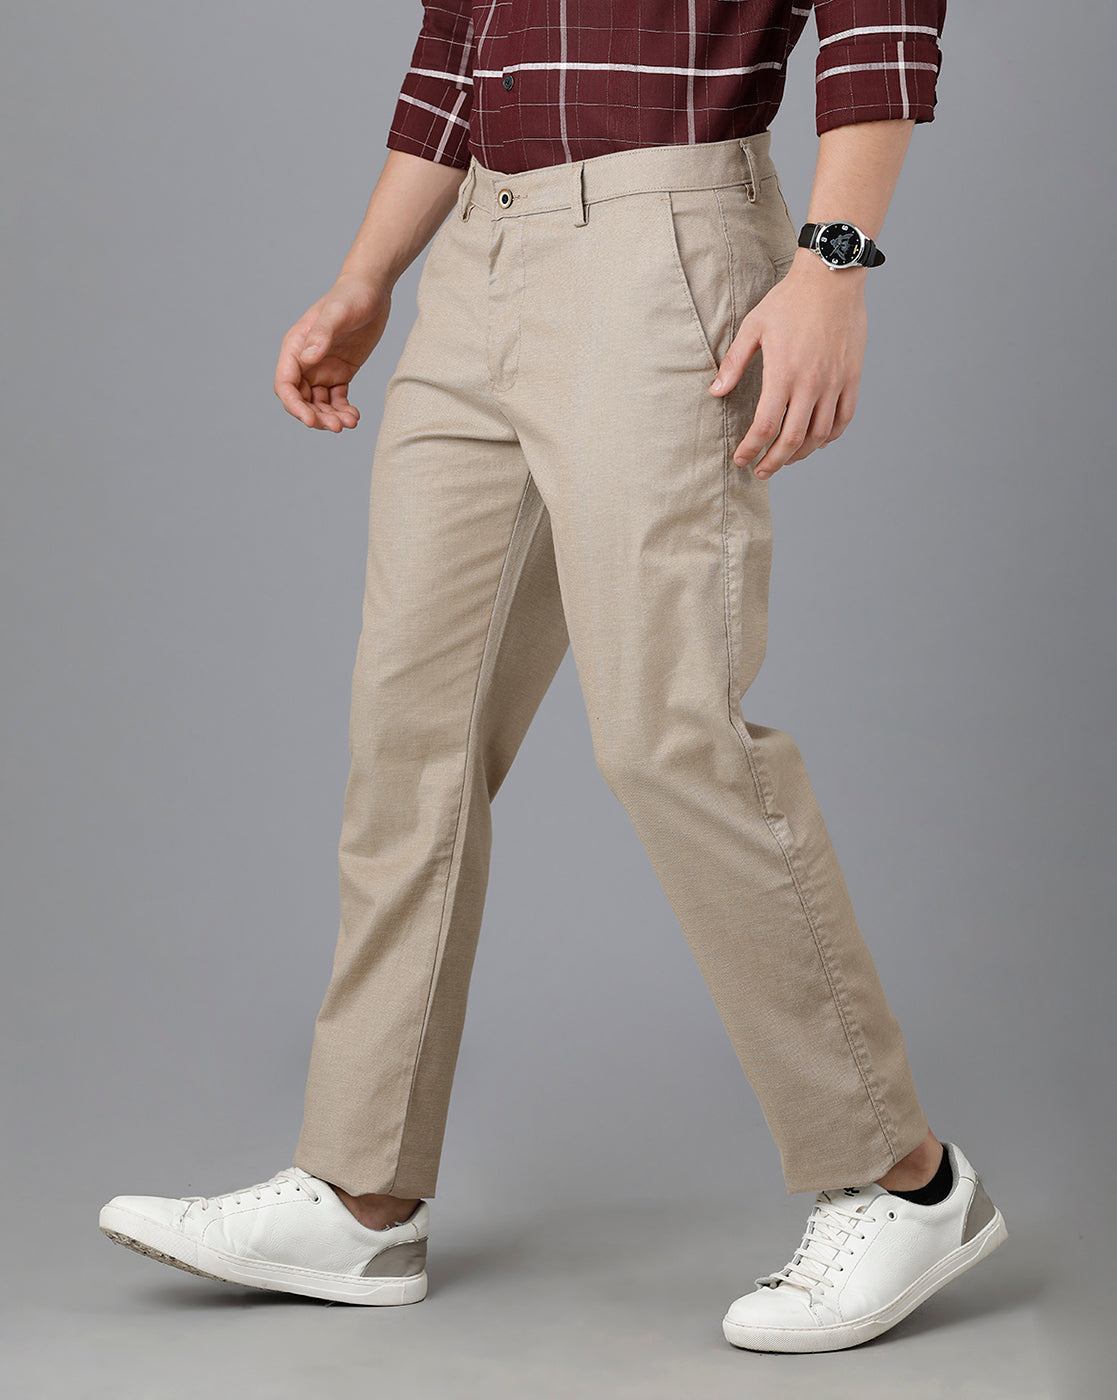 Pascal khaki cotton pants